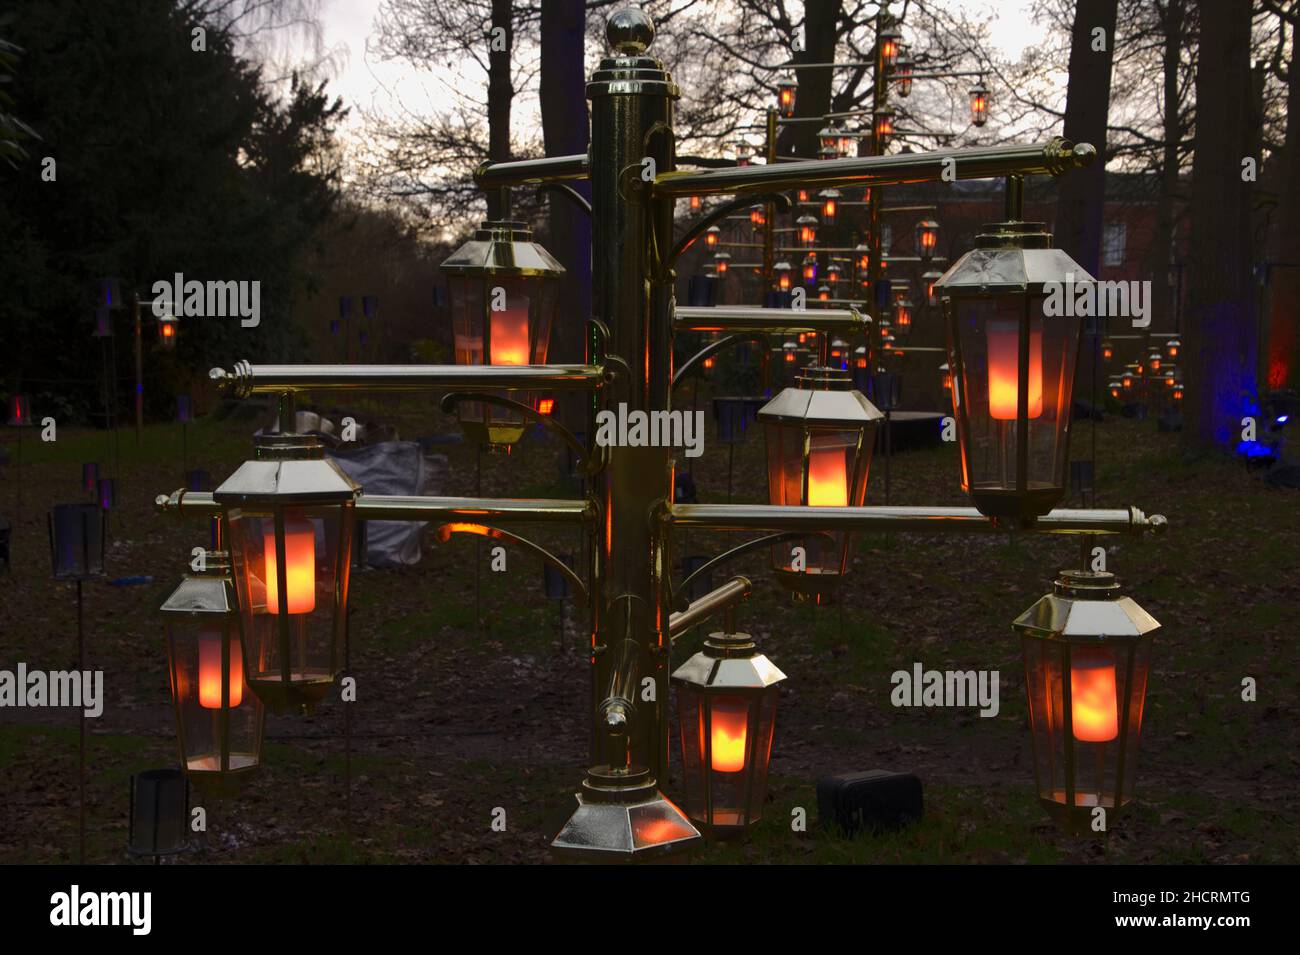 Exposition de lanternes au Dunham Massey National Trust, Cheshire, Angleterre, Royaume-Uni à Noël Banque D'Images